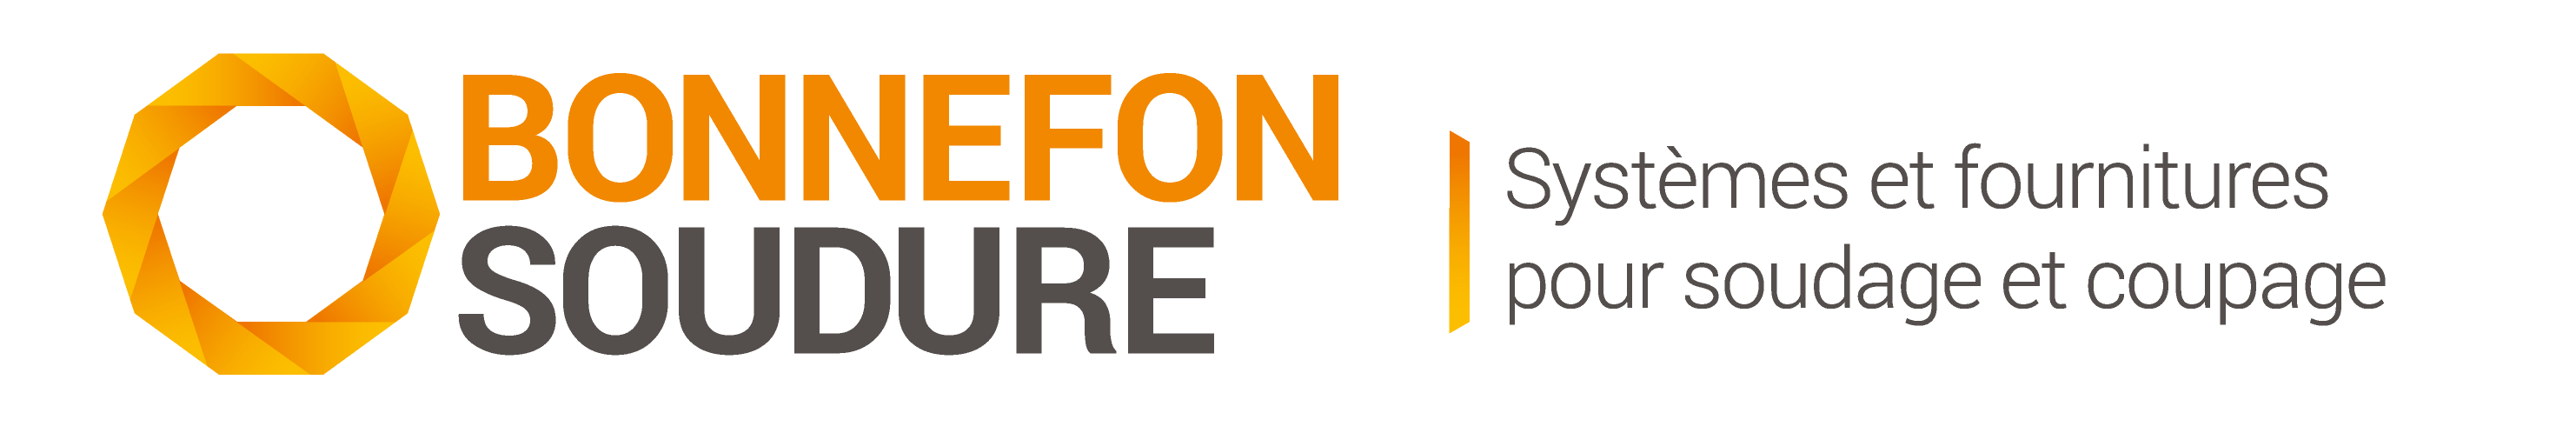 Logo Bonnefon soudure